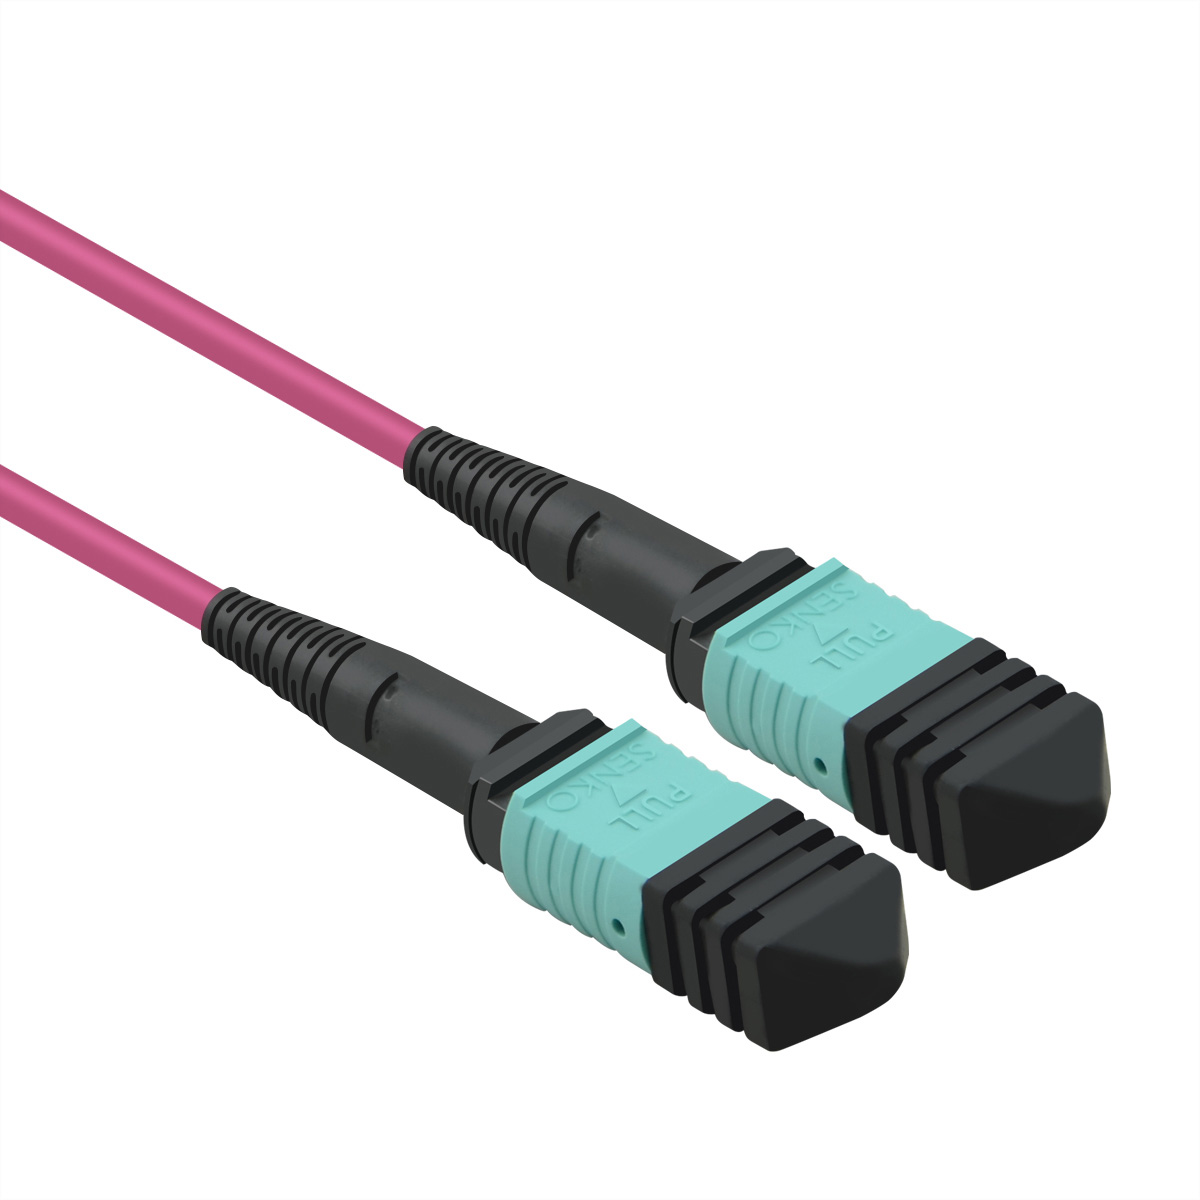 50/125µm OM4, (multi-fibre MPO/MPO, MPO-Trunk-Kabel m VALUE push-on), MPO 10